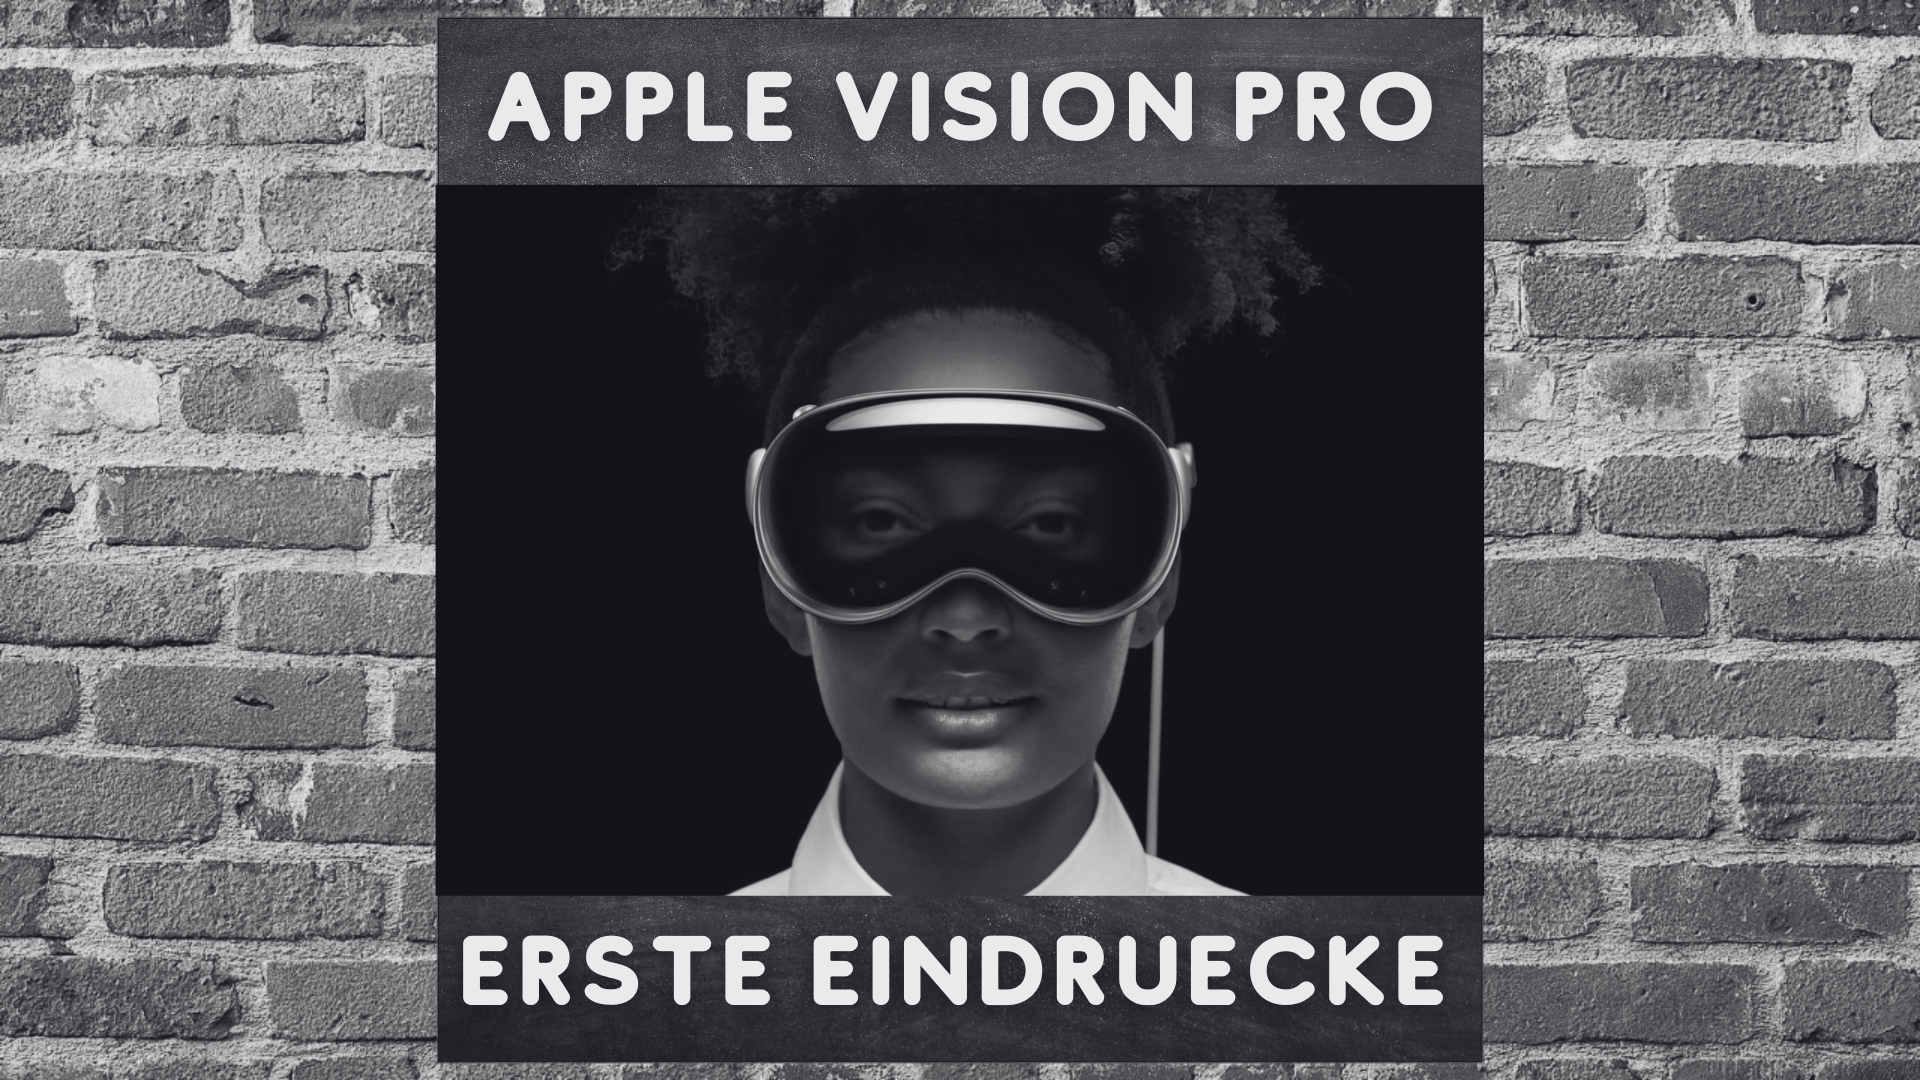 Apple Vision Pro Headset vorgestellt! Erste Eindruecke